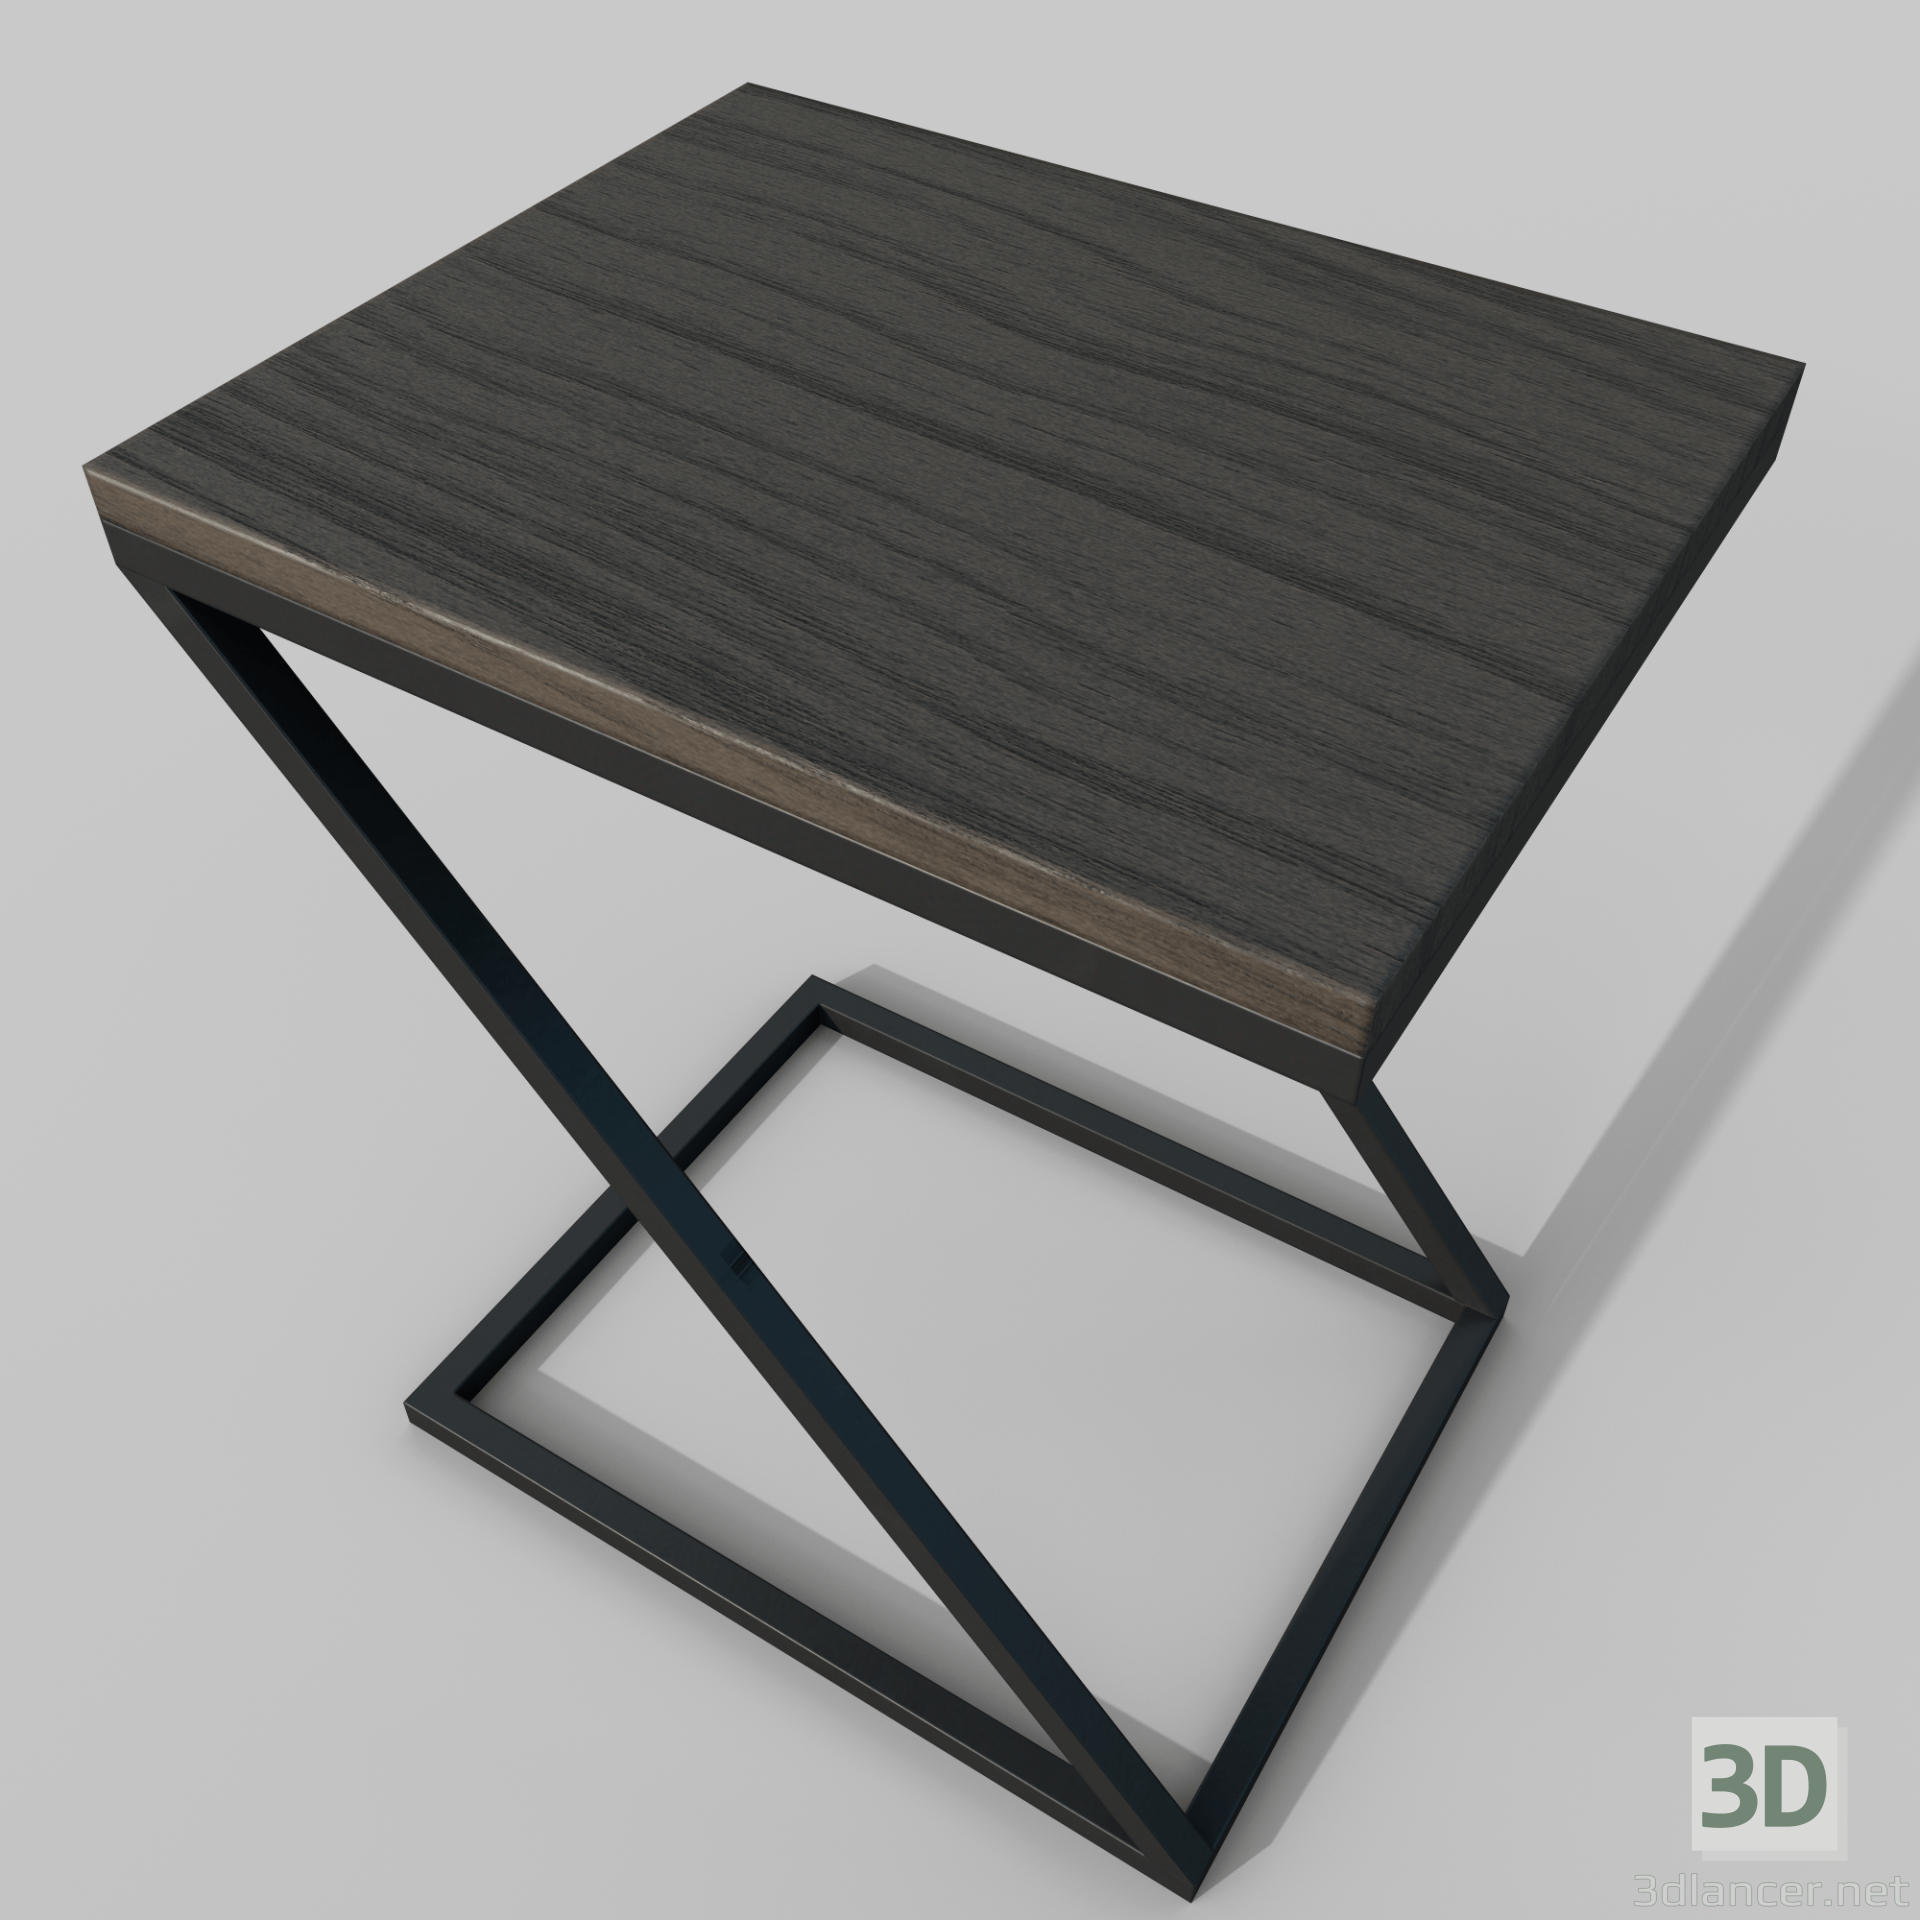 Stuhlkonzept 3D-Modell kaufen - Rendern